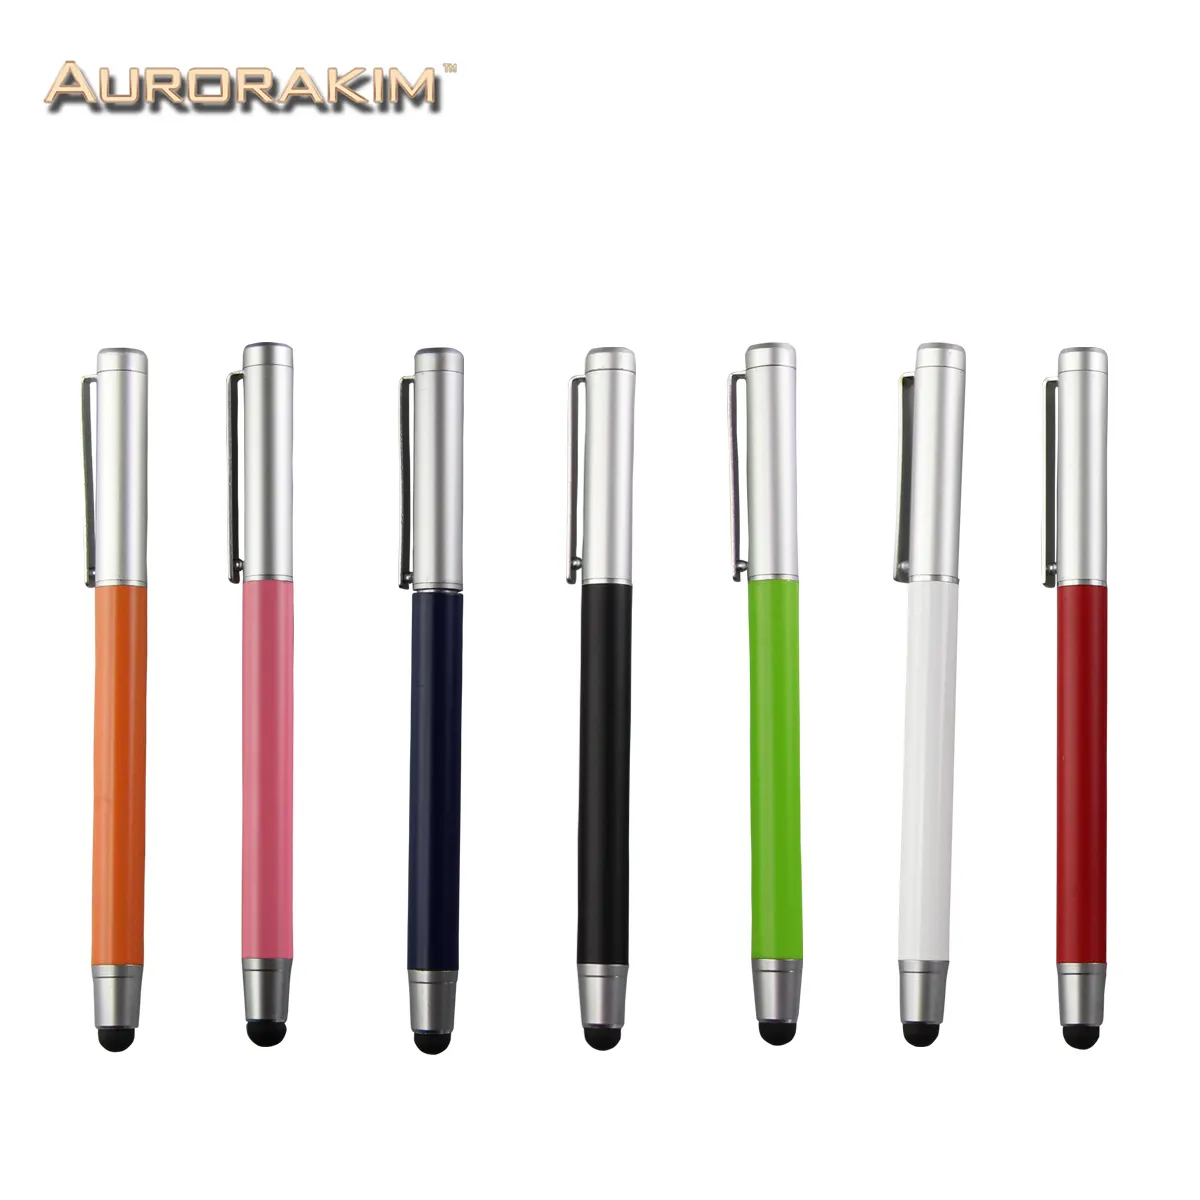 2 ใน 1 ปากกาสัมผัส Series แผ่นดิสก์ Sucker ความจุปากกา Stylus Touch ปากกาสำหรับโทรศัพท์